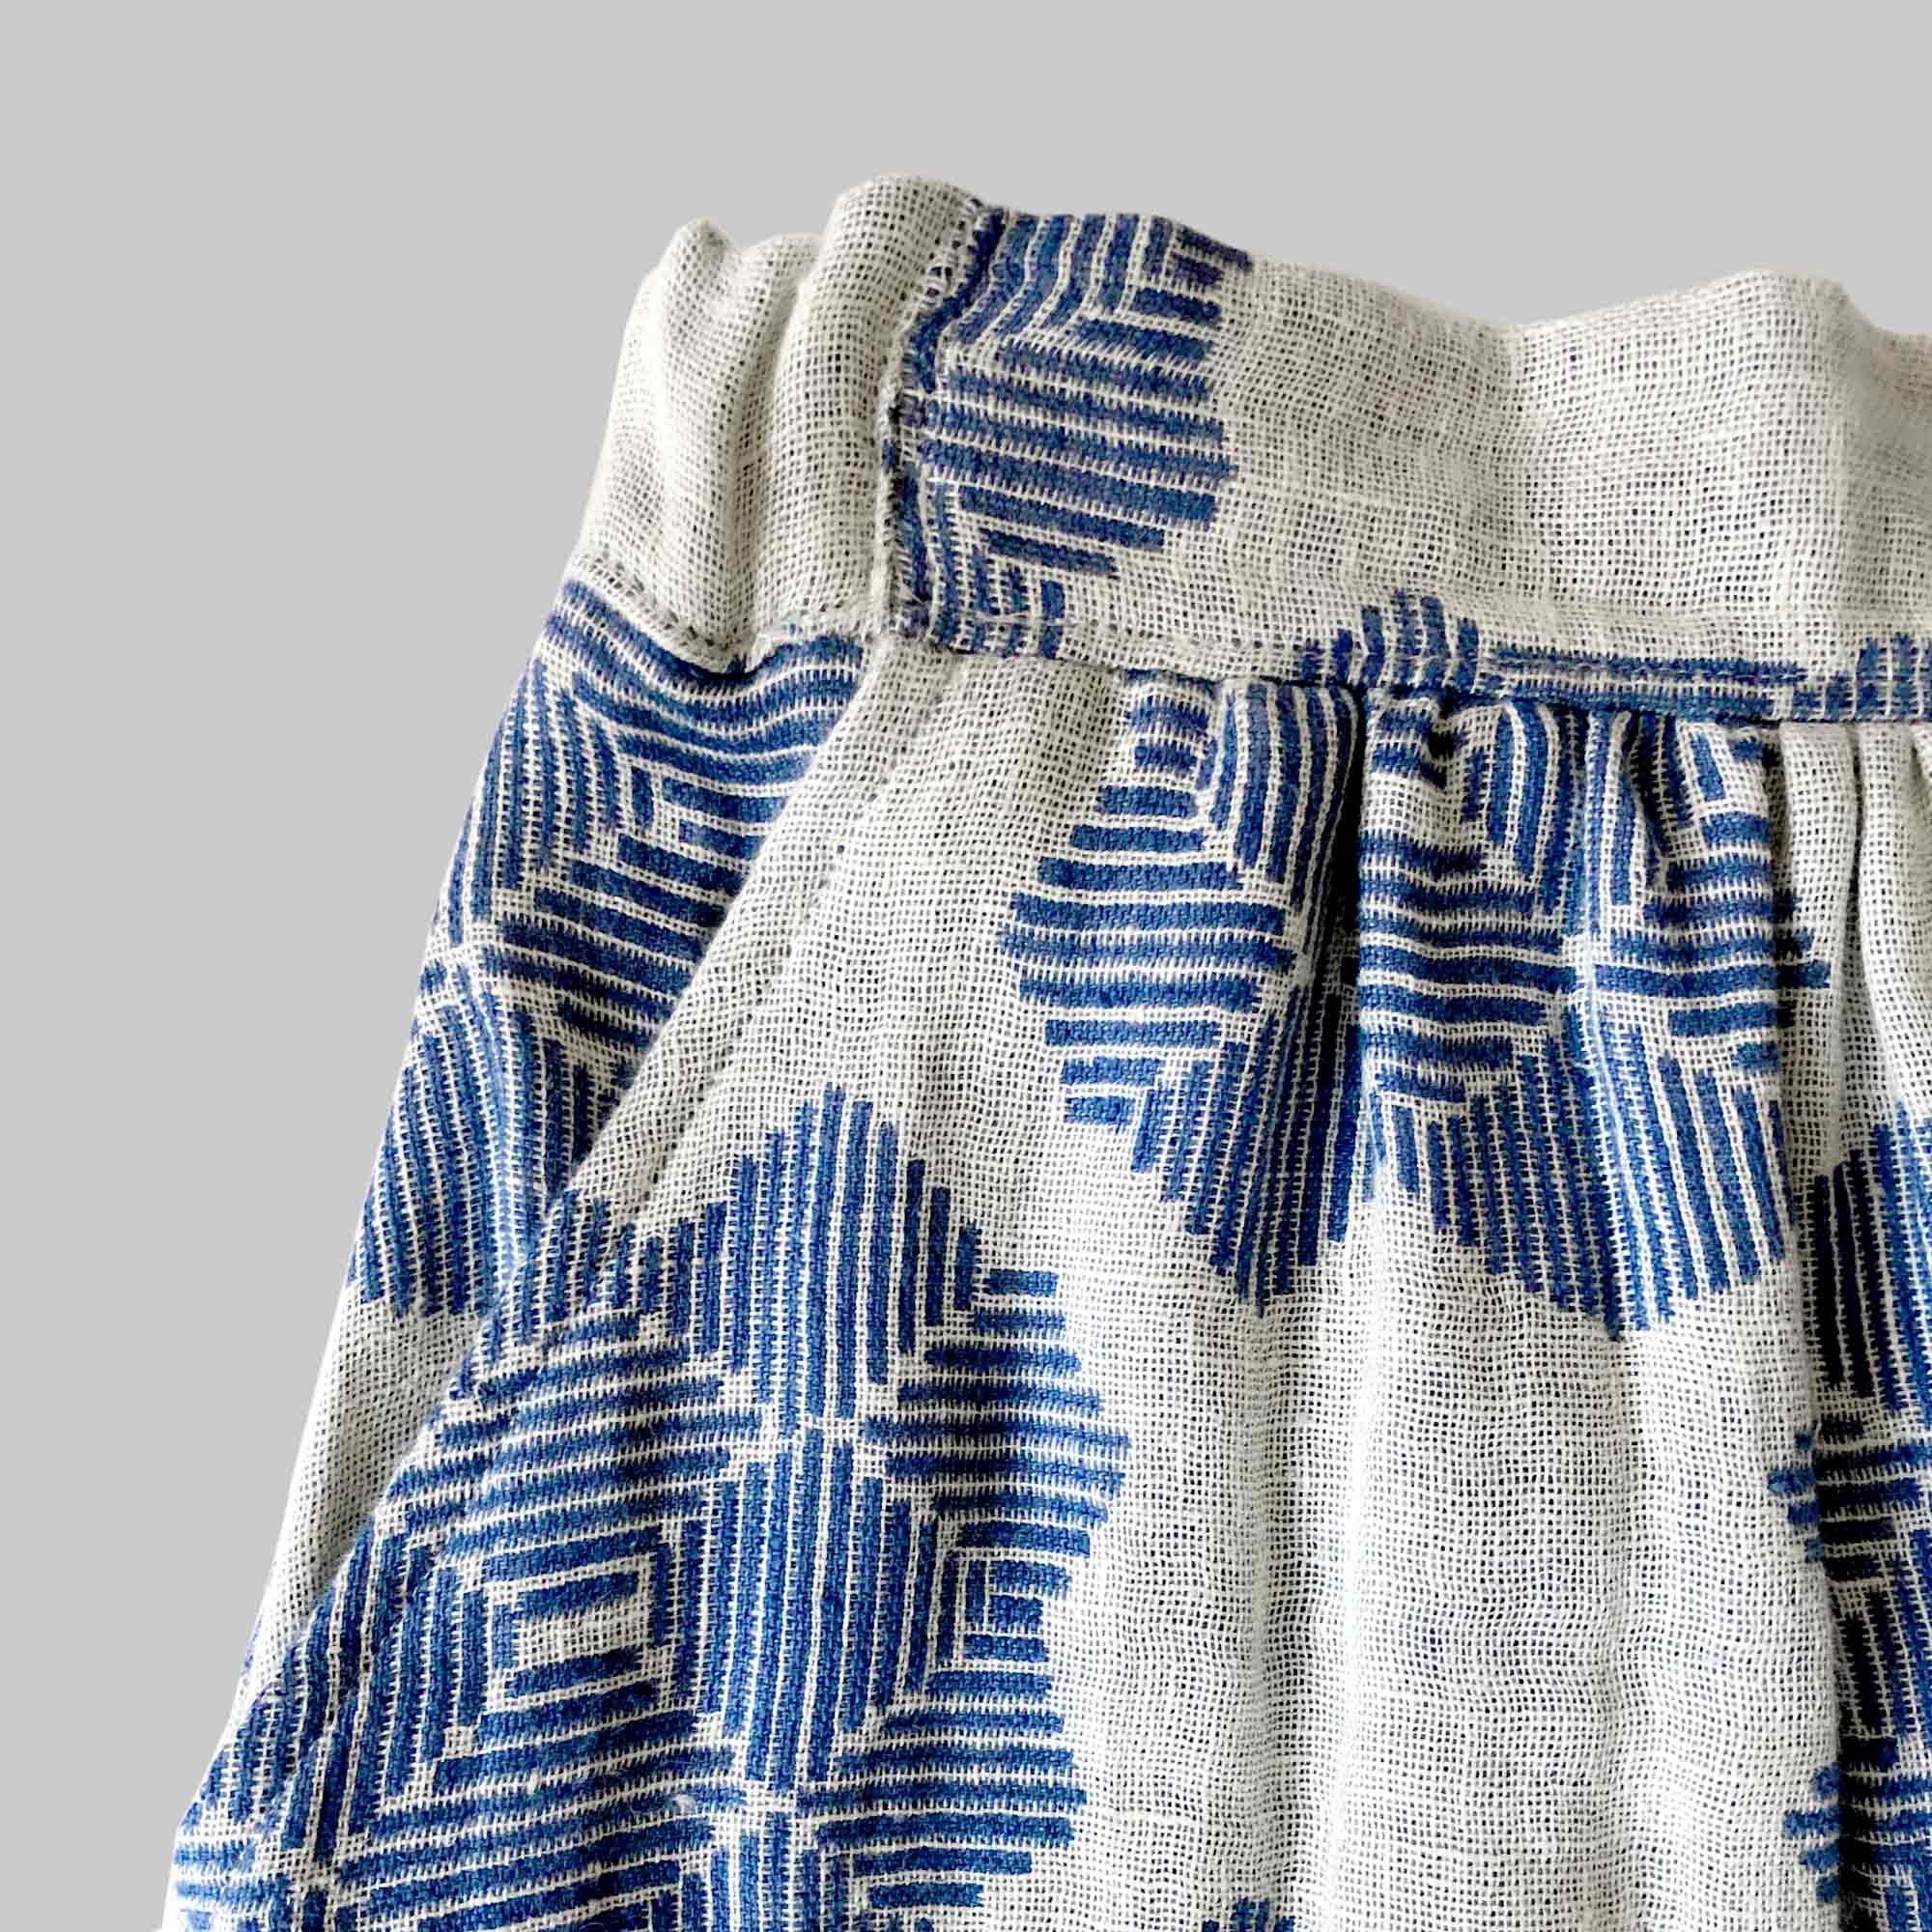 Skirt, pure linen, Desert roses pattern, design by Anne Rosenberg